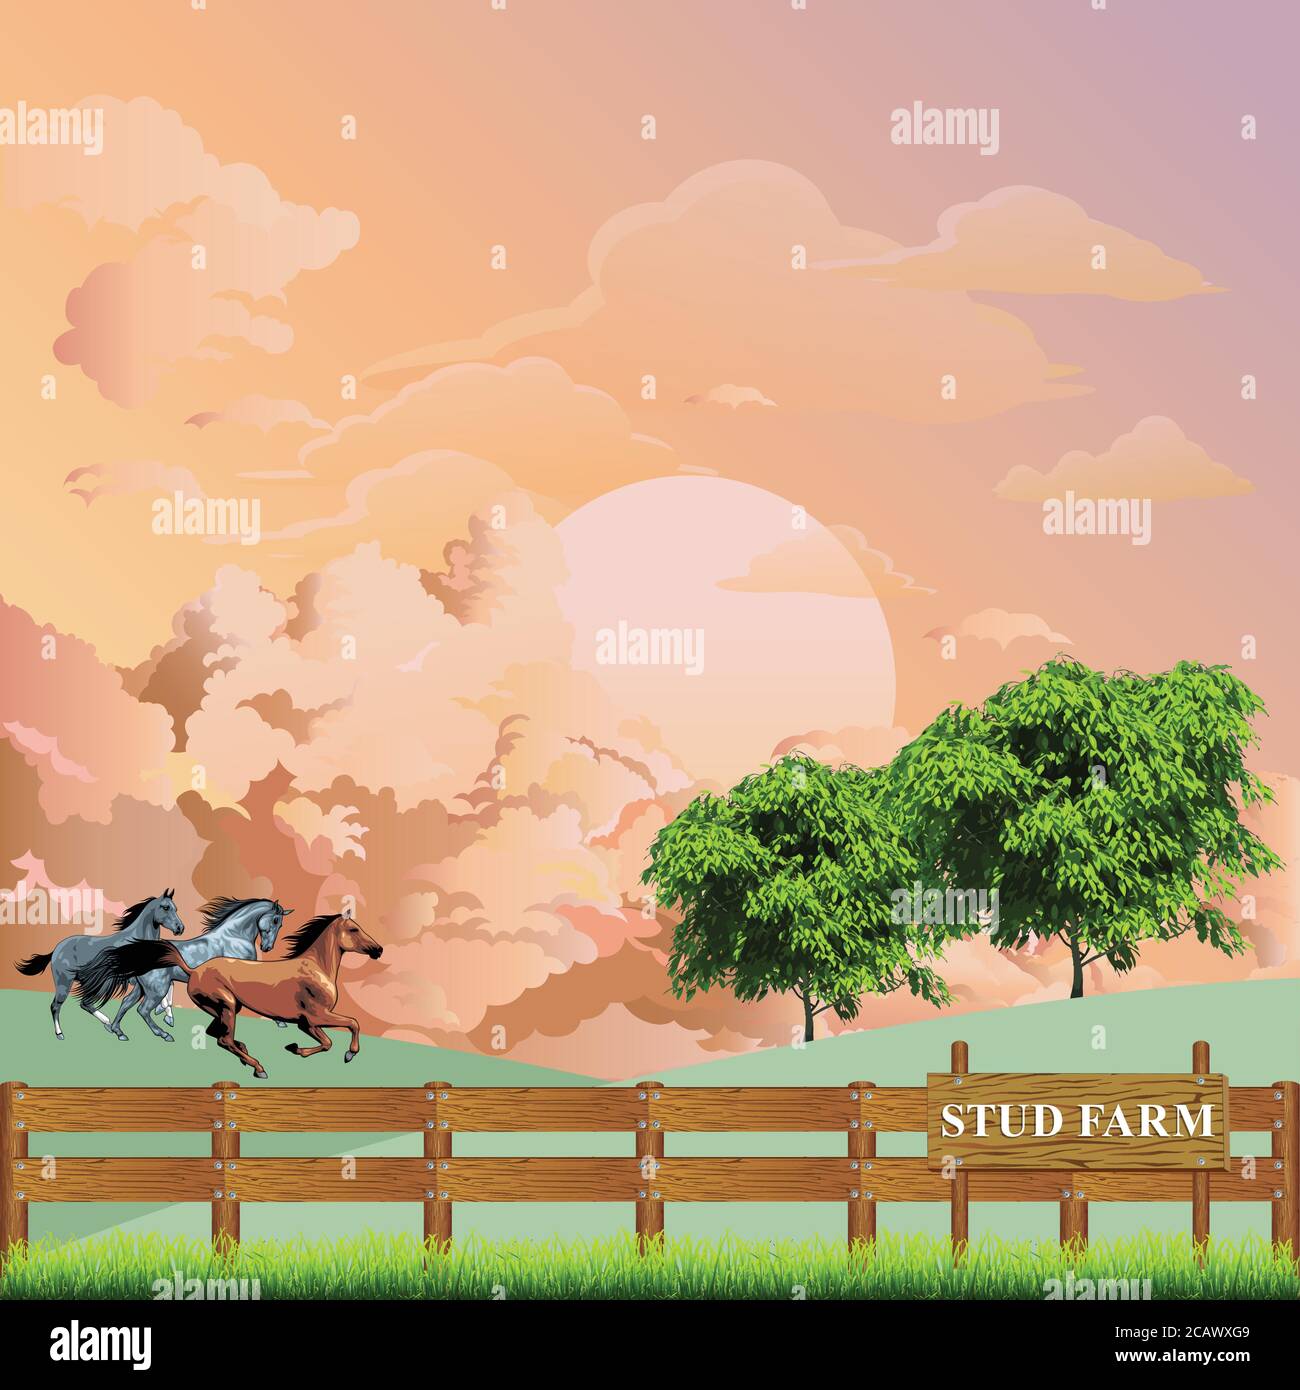 Pintoresca escena rural con caballos corriendo a través de un paddock en una granja de cría de sementales contra un amanecer o el cielo al atardecer Ilustración del Vector